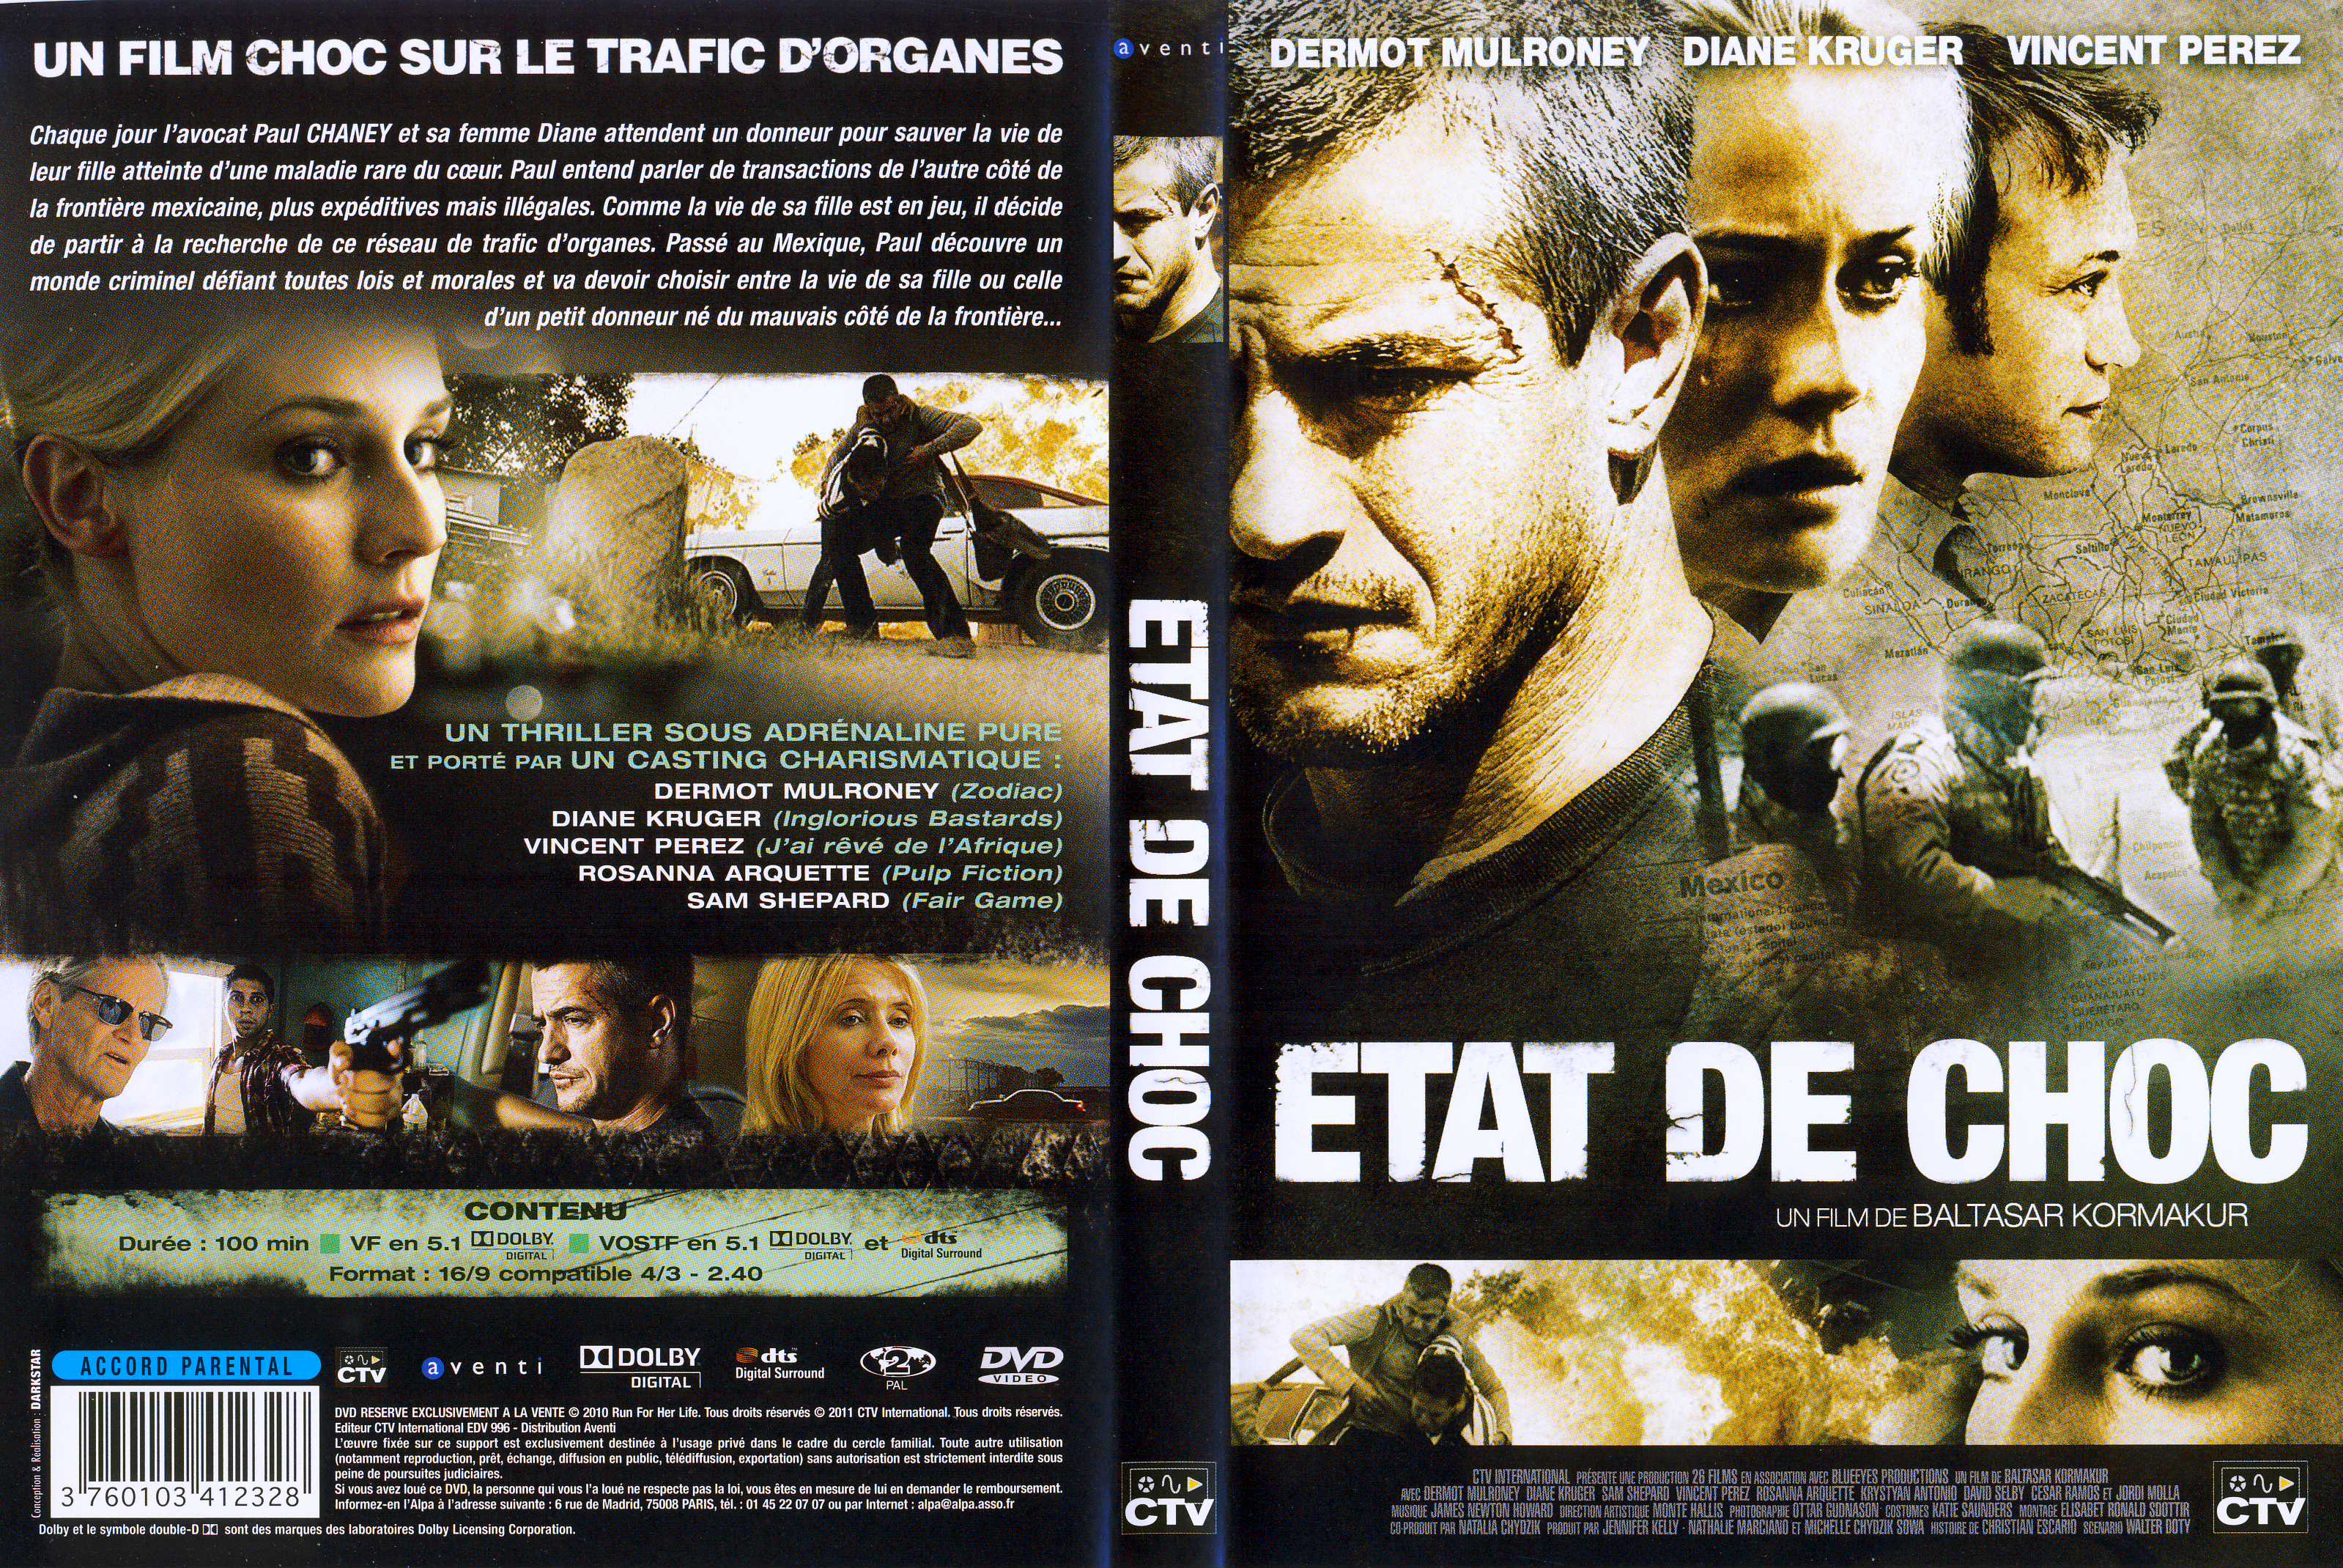 Jaquette DVD Etat de choc (2010)